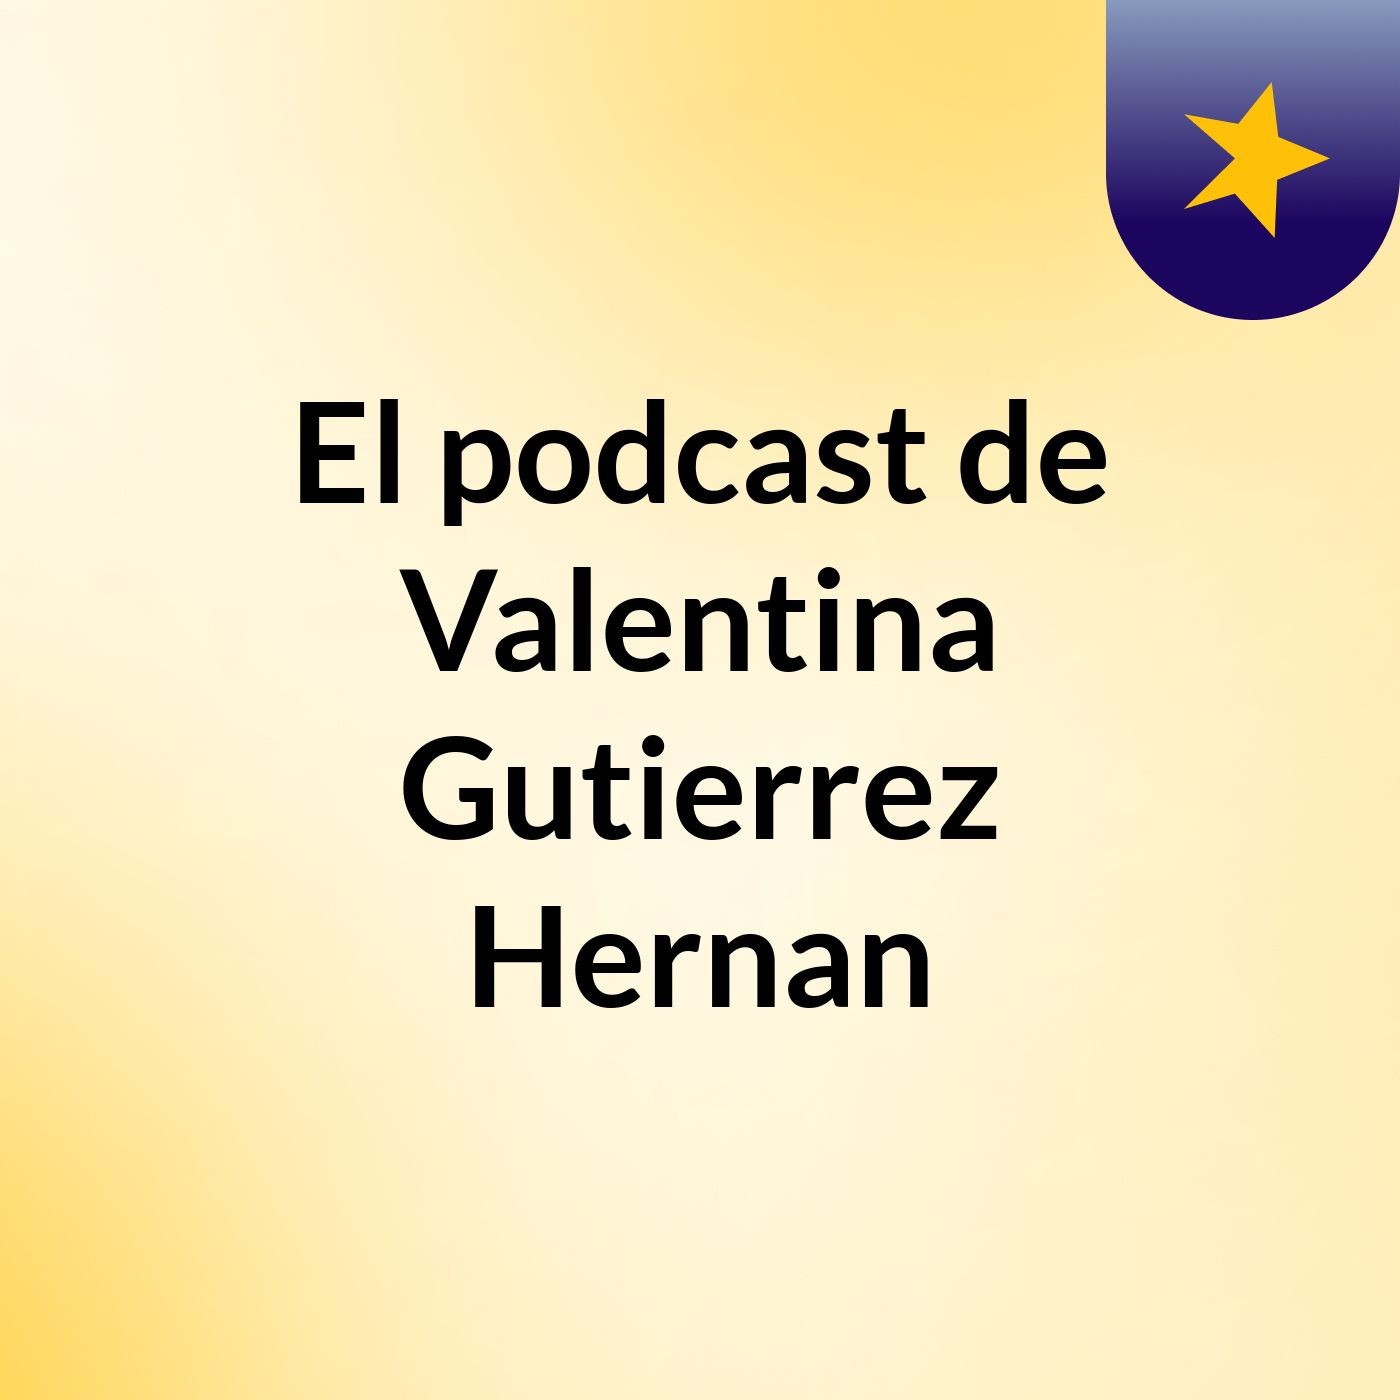 Episodio 14 - El podcast de Valentina Gutierrez Hernan